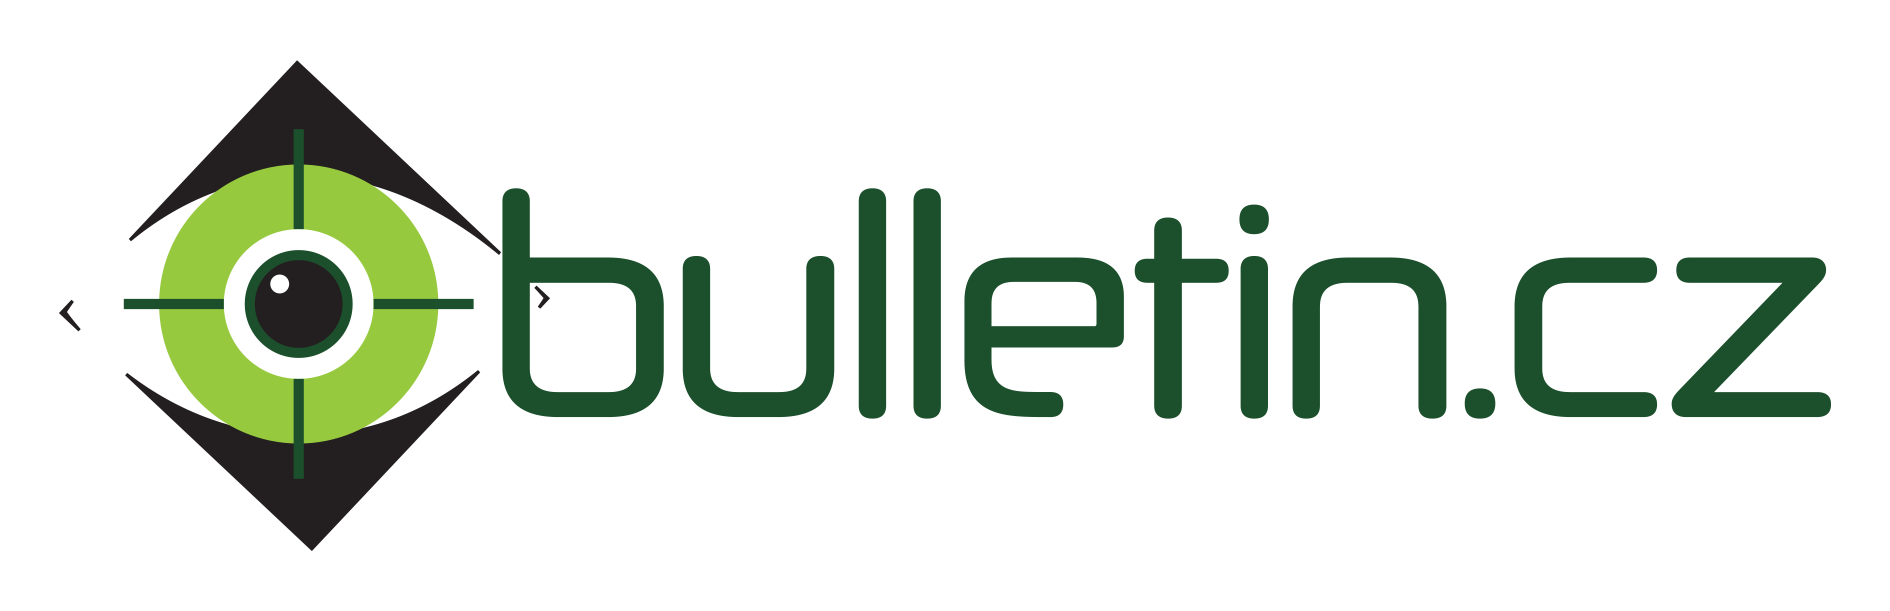 Logo_Bulletin_2022_bezpopisek_krivky